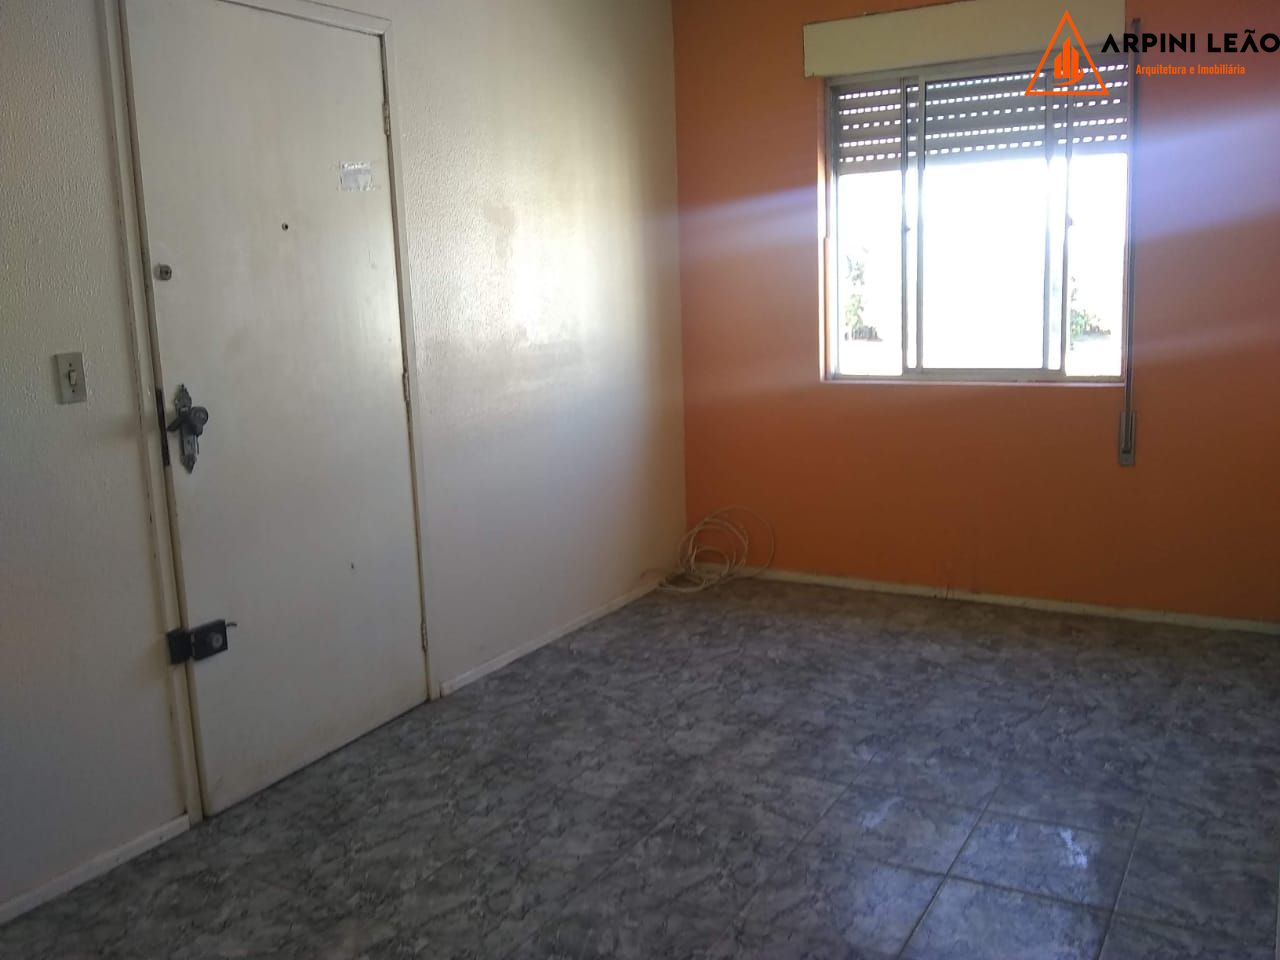 Apartamento com 1 Dormitórios à venda, 41 m² por R$ 96.000,00